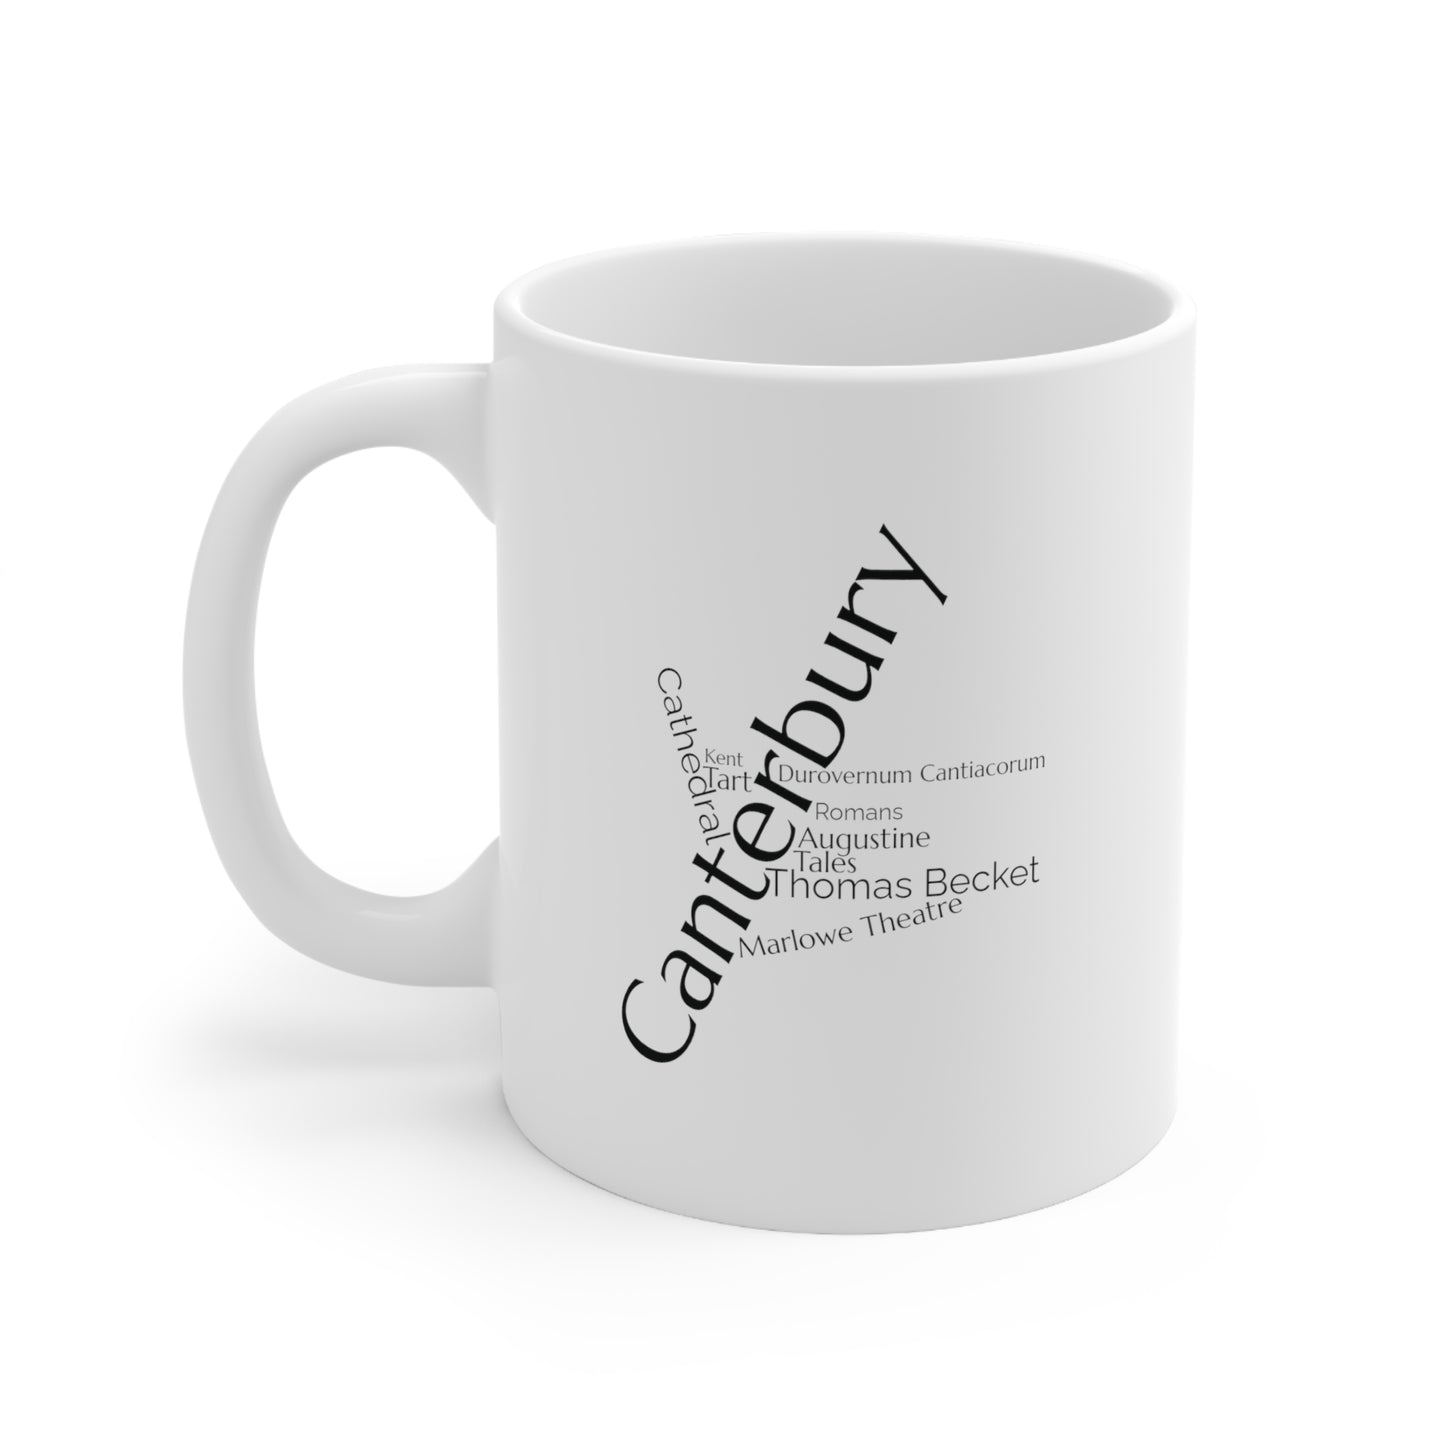 Canterbury word mug, local mug, geography mug, gift, mug, coffee cup, word mug, wordcloud mug, christmas gift, birthday gift